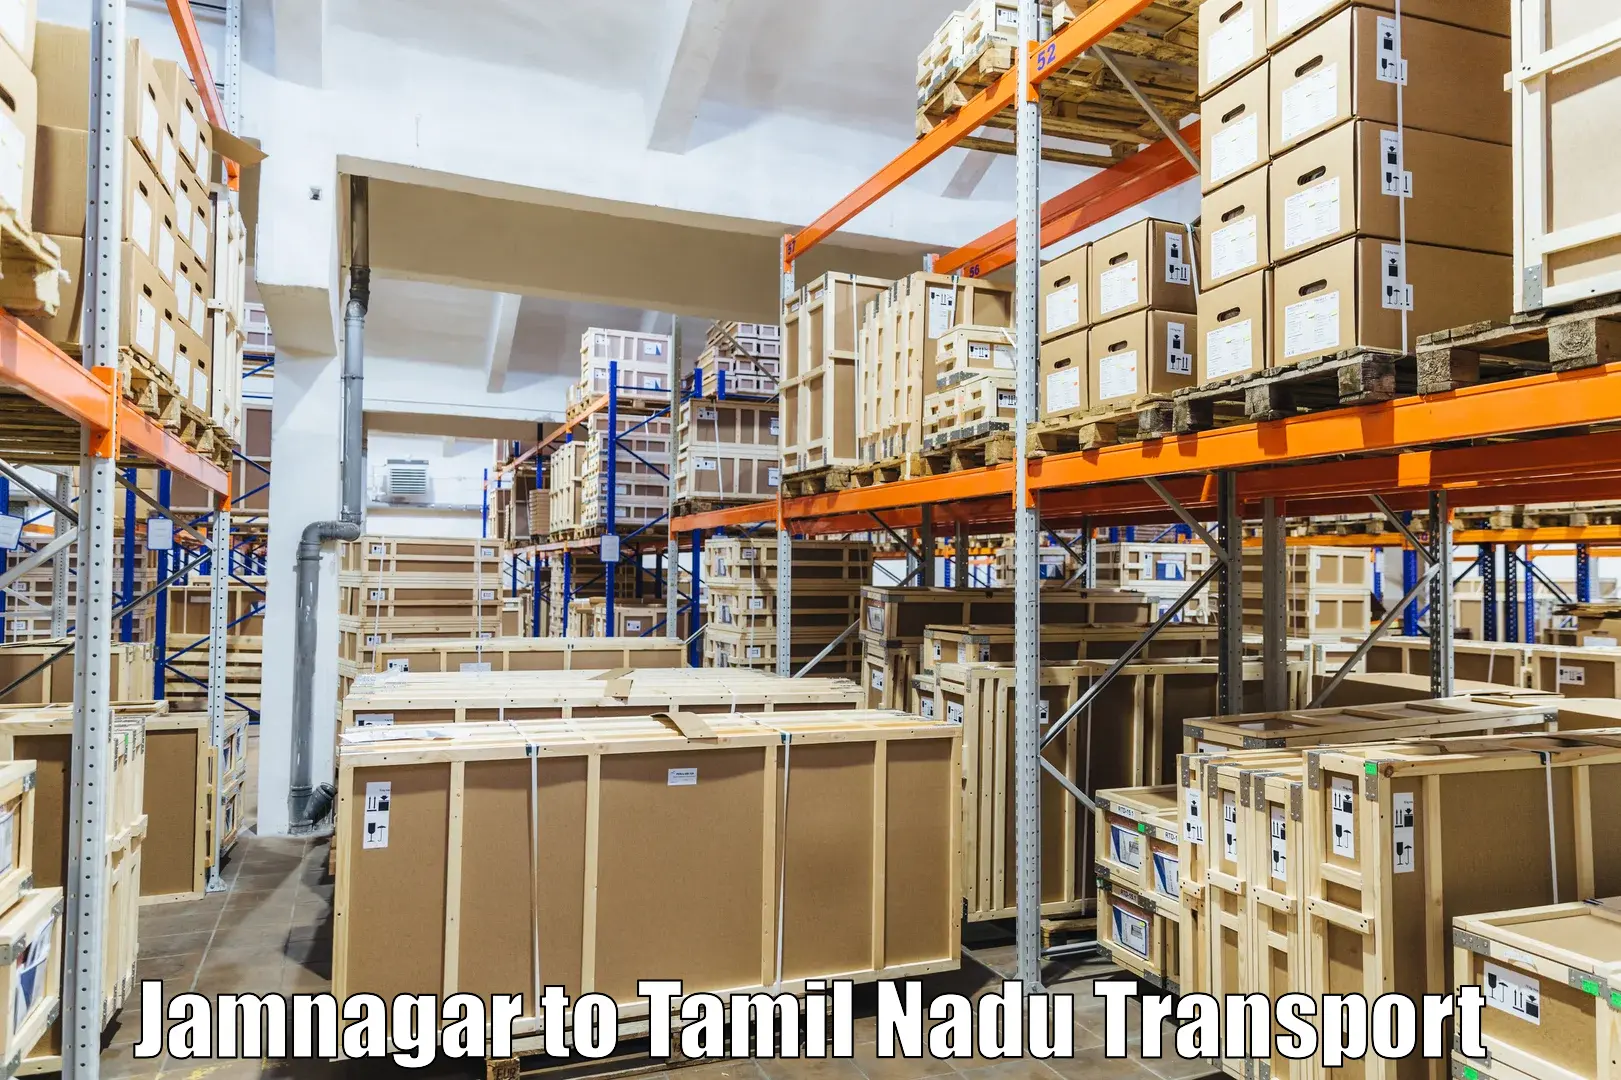 Container transport service Jamnagar to Narikkudi